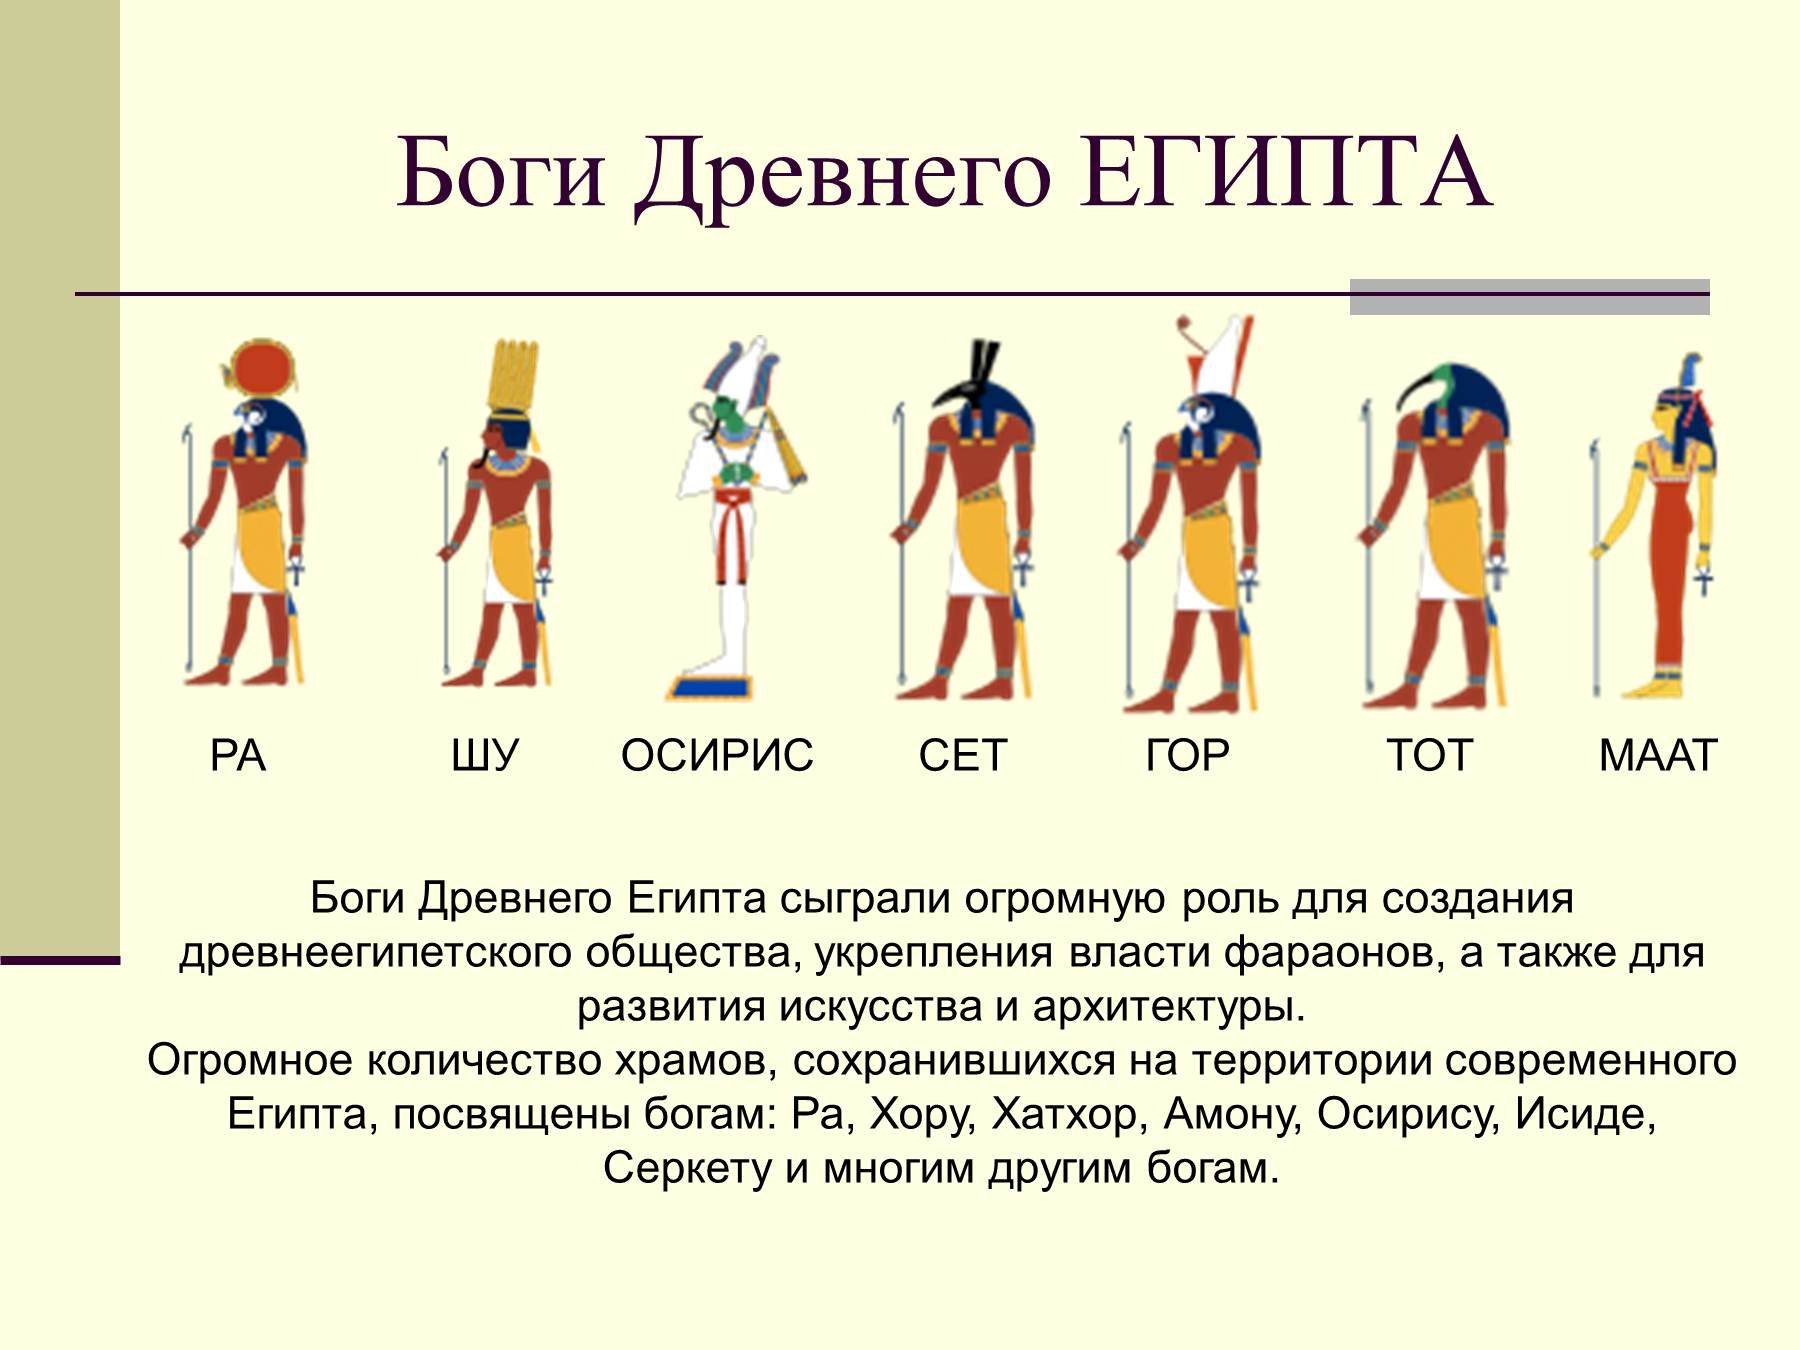 Иллюстрации относящиеся к древнему египту 5 класс. Боги древнего Египта 5 класс история. Древнеегипетские боги и их изображения. Боги Египта история древнего Египта 5 класс.